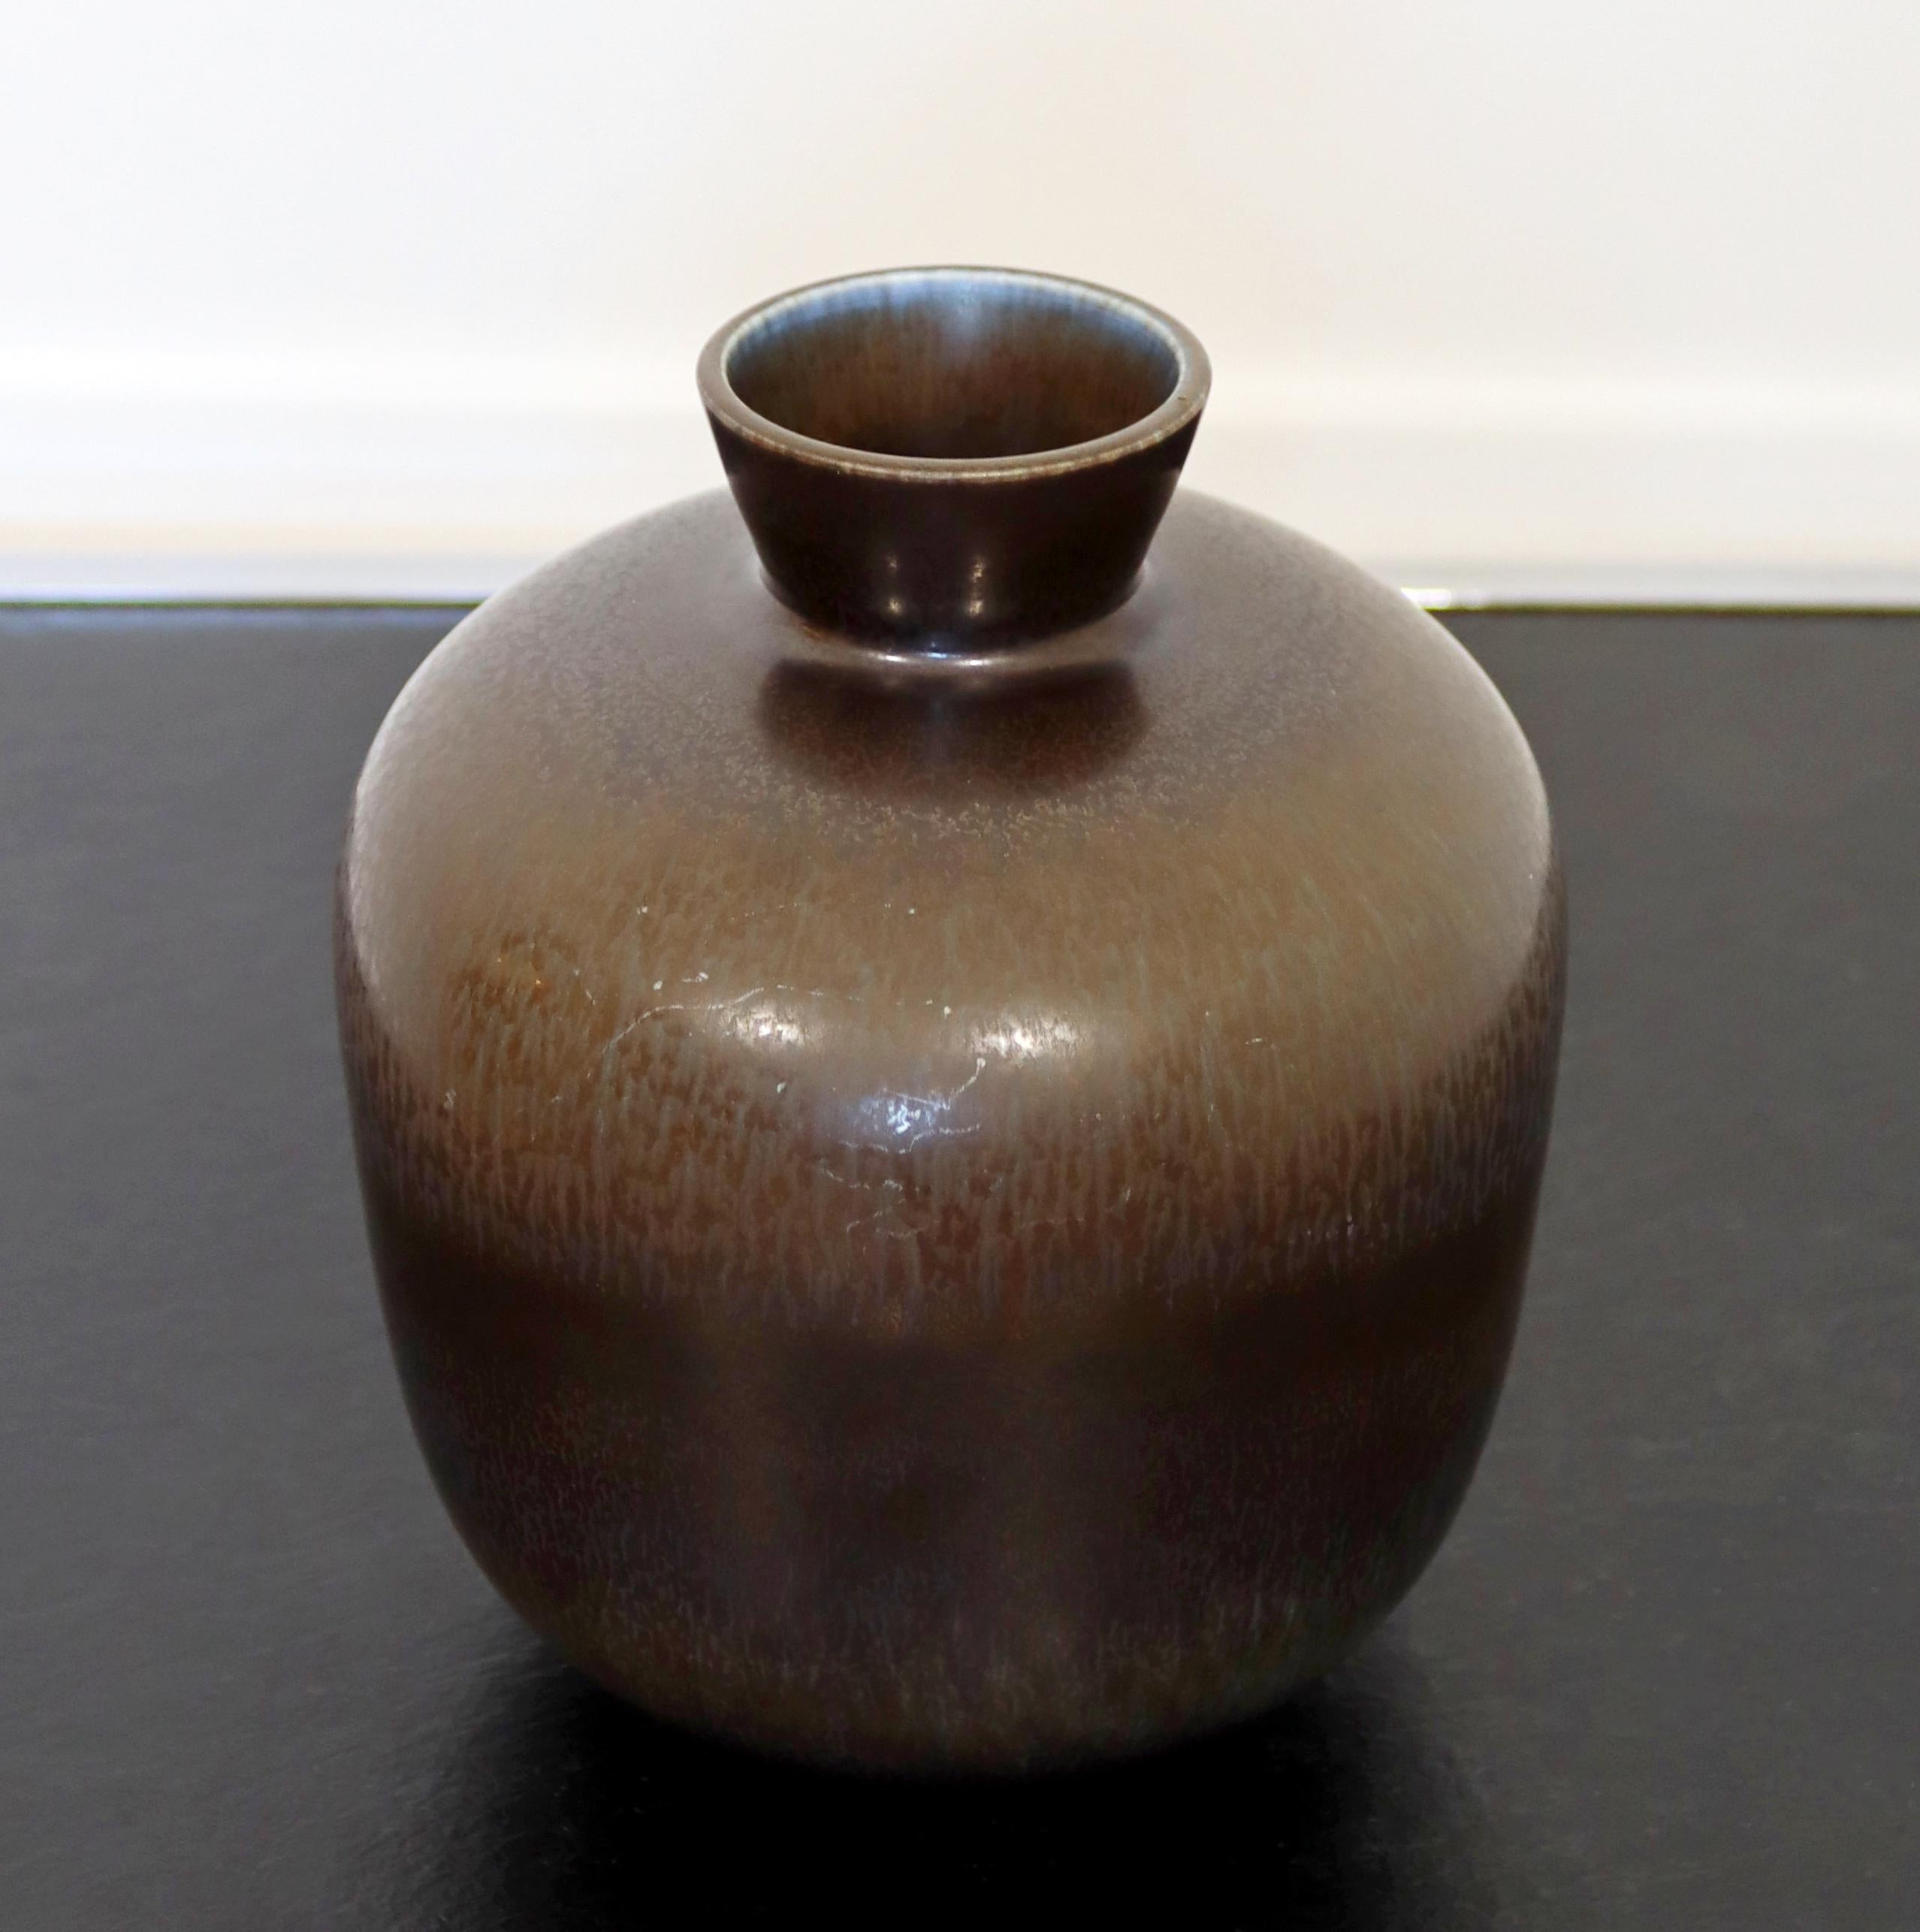 Nous vous proposons un magnifique vase en céramique, avec une glaçure grise de lièvre, fabriqué en Suède, signé sur la base par Berndt Friberg, vers les années 1960. En parfait état. Les dimensions sont de 5,5